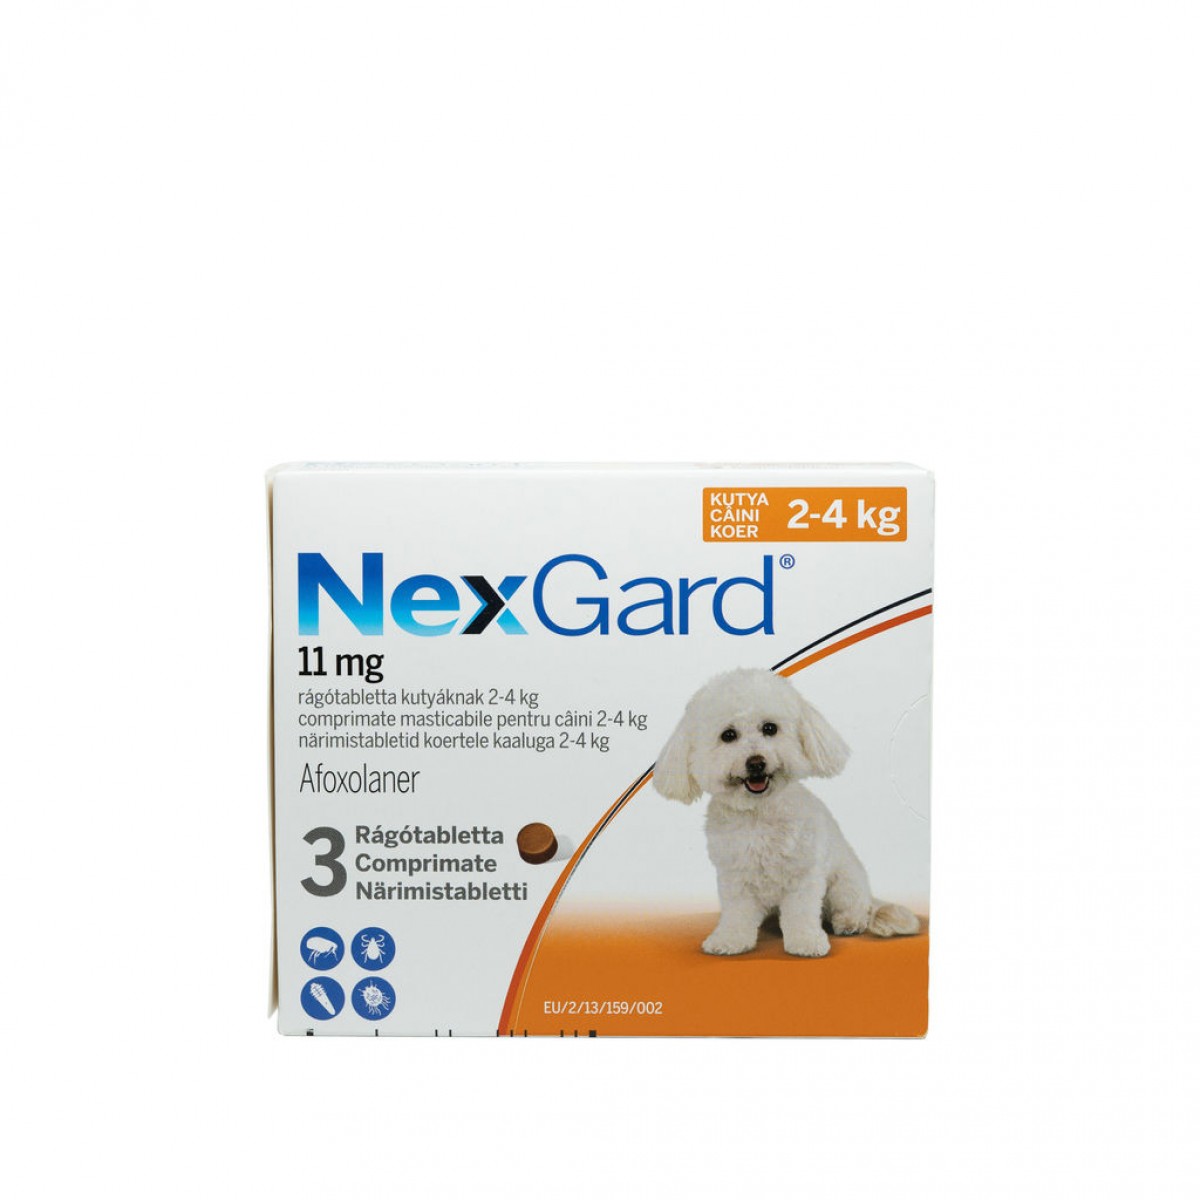 Nexgard S pentru câini de 2 - 4kg, 3 comprimate masticabile, Antiparazitare externe, Antiparazitare, Câini 